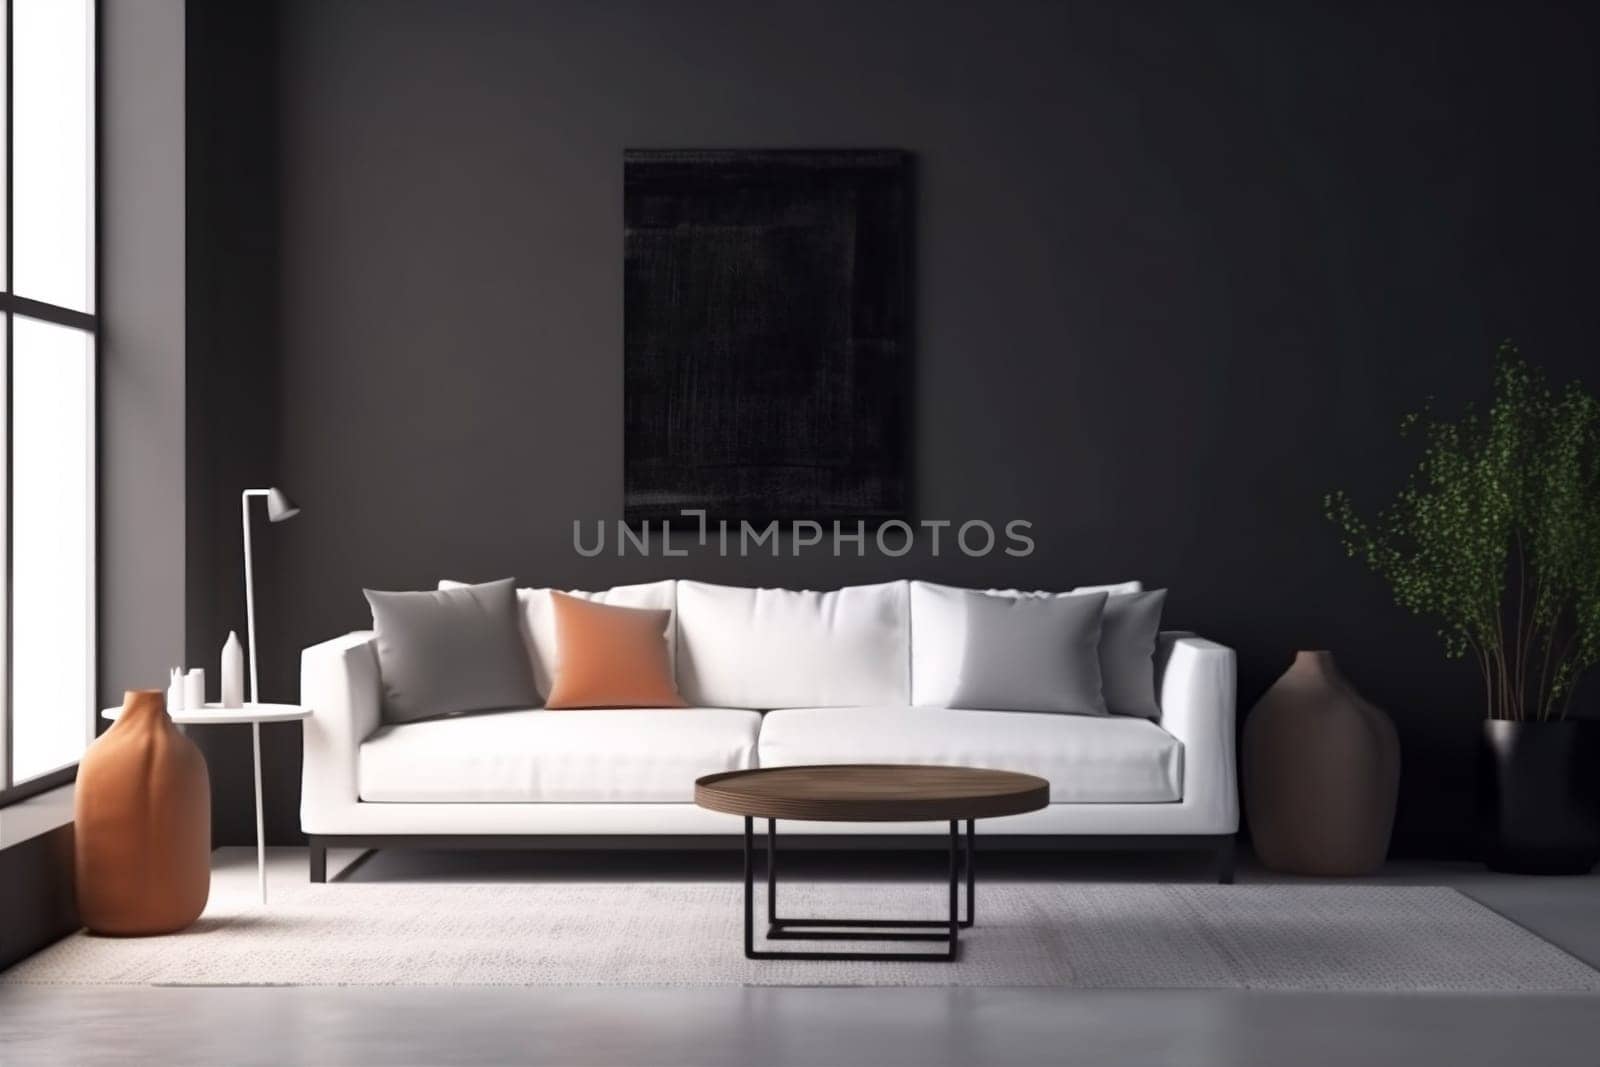 interior background furniture sofa floor design grey concrete dark living room light indoor space render decor room decoration. Generative AI.